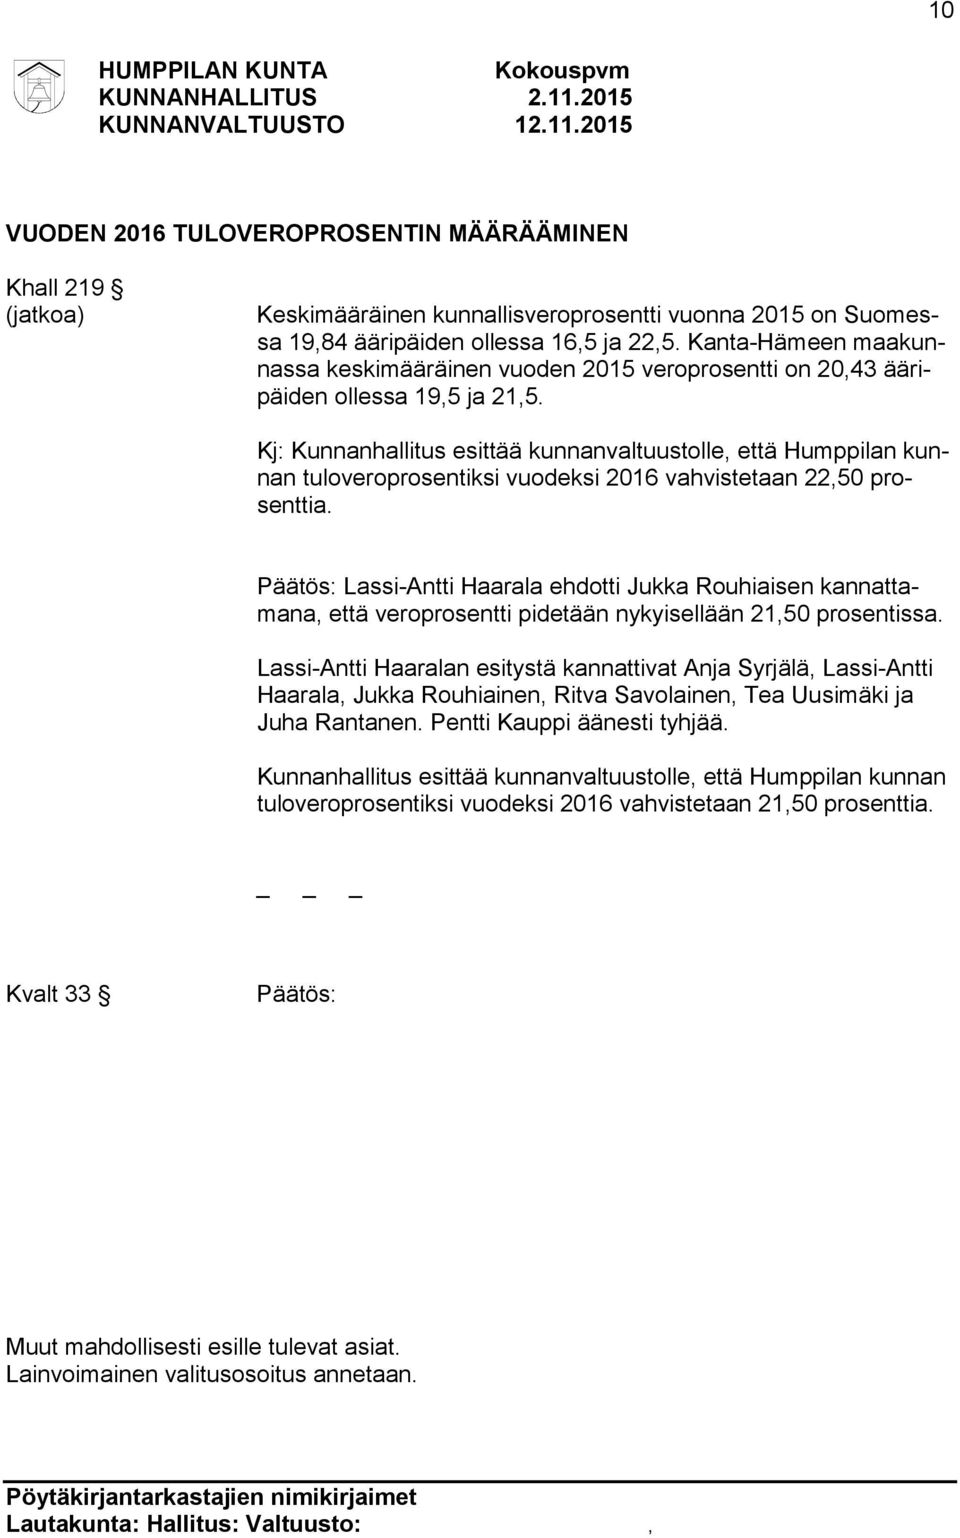 Kj: Kunnanhallitus esittää kunnanvaltuustolle, että Humppilan kunnan tuloveroprosentiksi vuodeksi 2016 vahvistetaan 22,50 prosenttia.